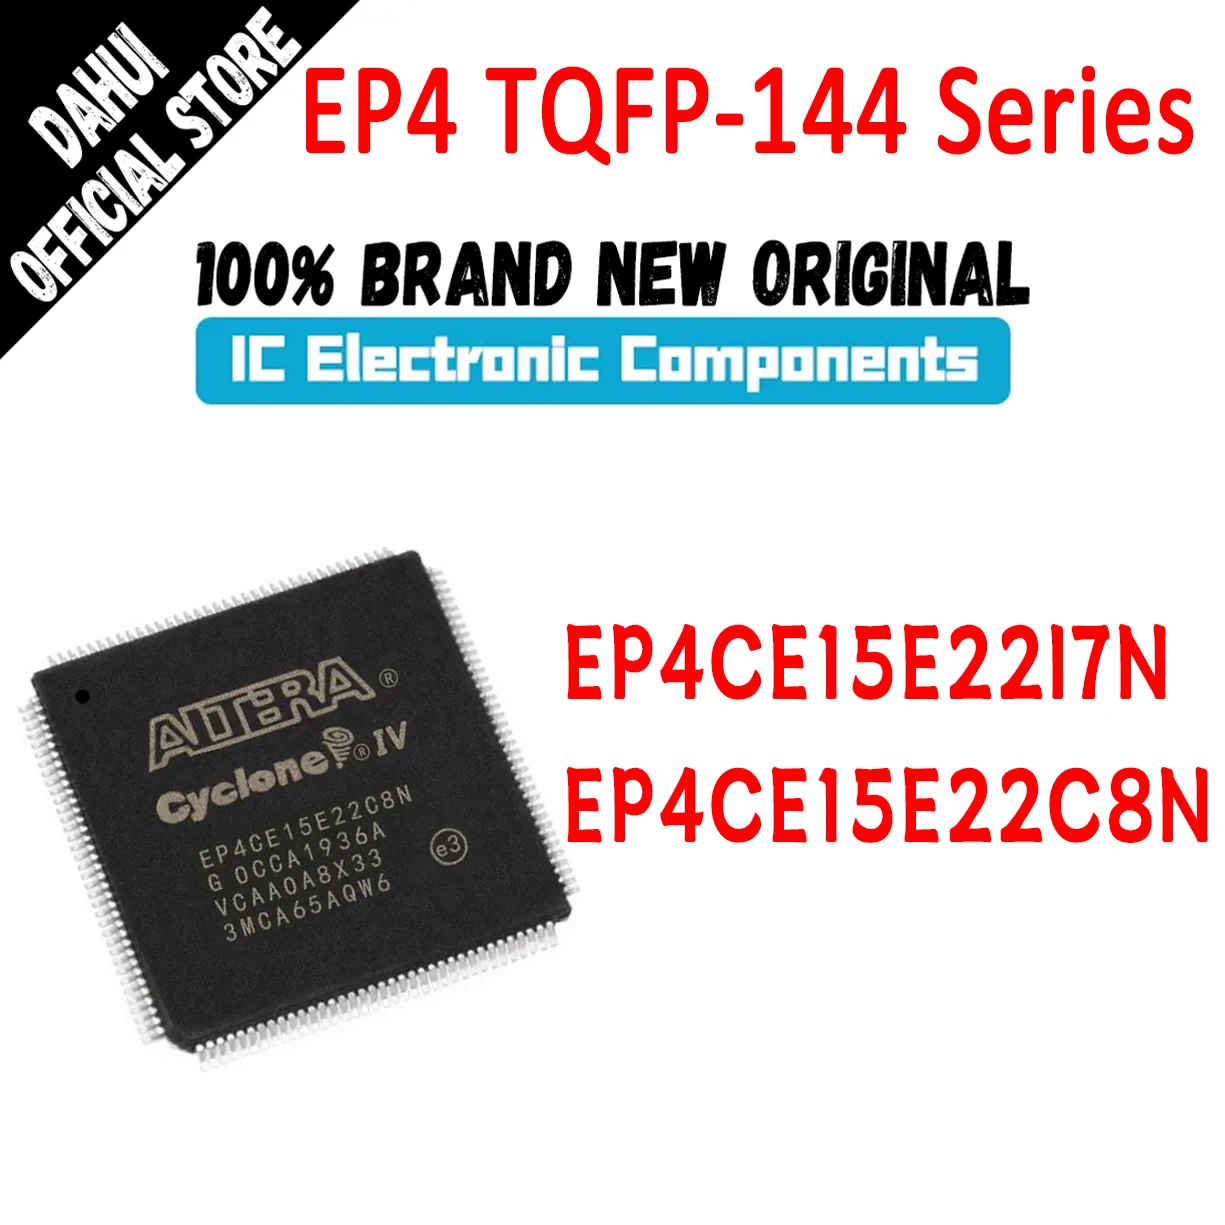 

New EP4CE15E22I7N EP4CE15E22C8N EP4CE15E22I7 EP4CE15E22C8 EP4CE15E22I EP4CE15E22C EP4CE15E22 EP4CE15E IC Chip CPLD FPGA TQFP-144